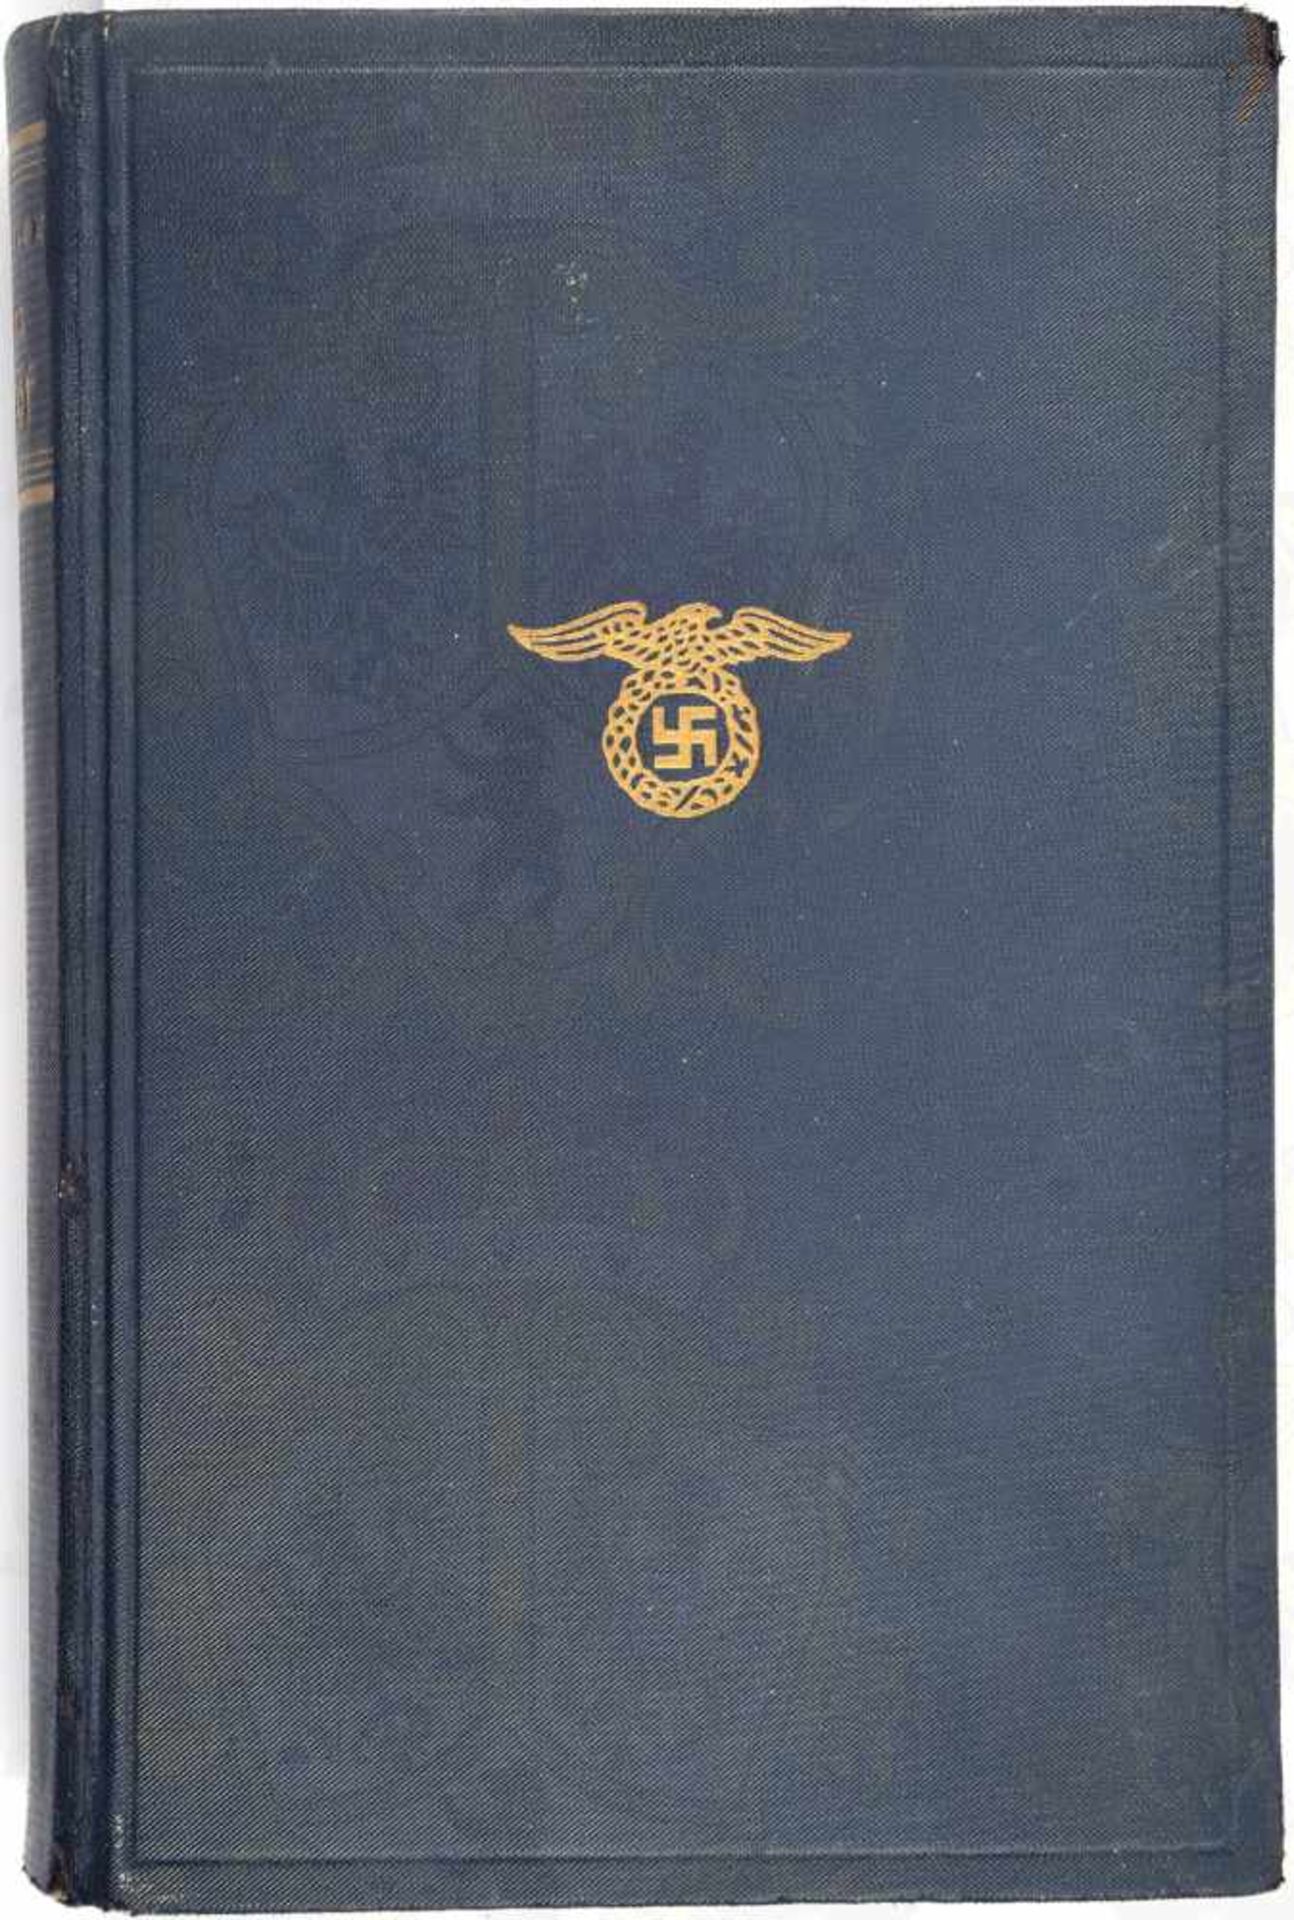 MEIN KAMPF, A. Hitler, Volksausgabe, Eher Verlag 1938, 781 S., Portrait fehlt, goldgepr. blaues Ln.,